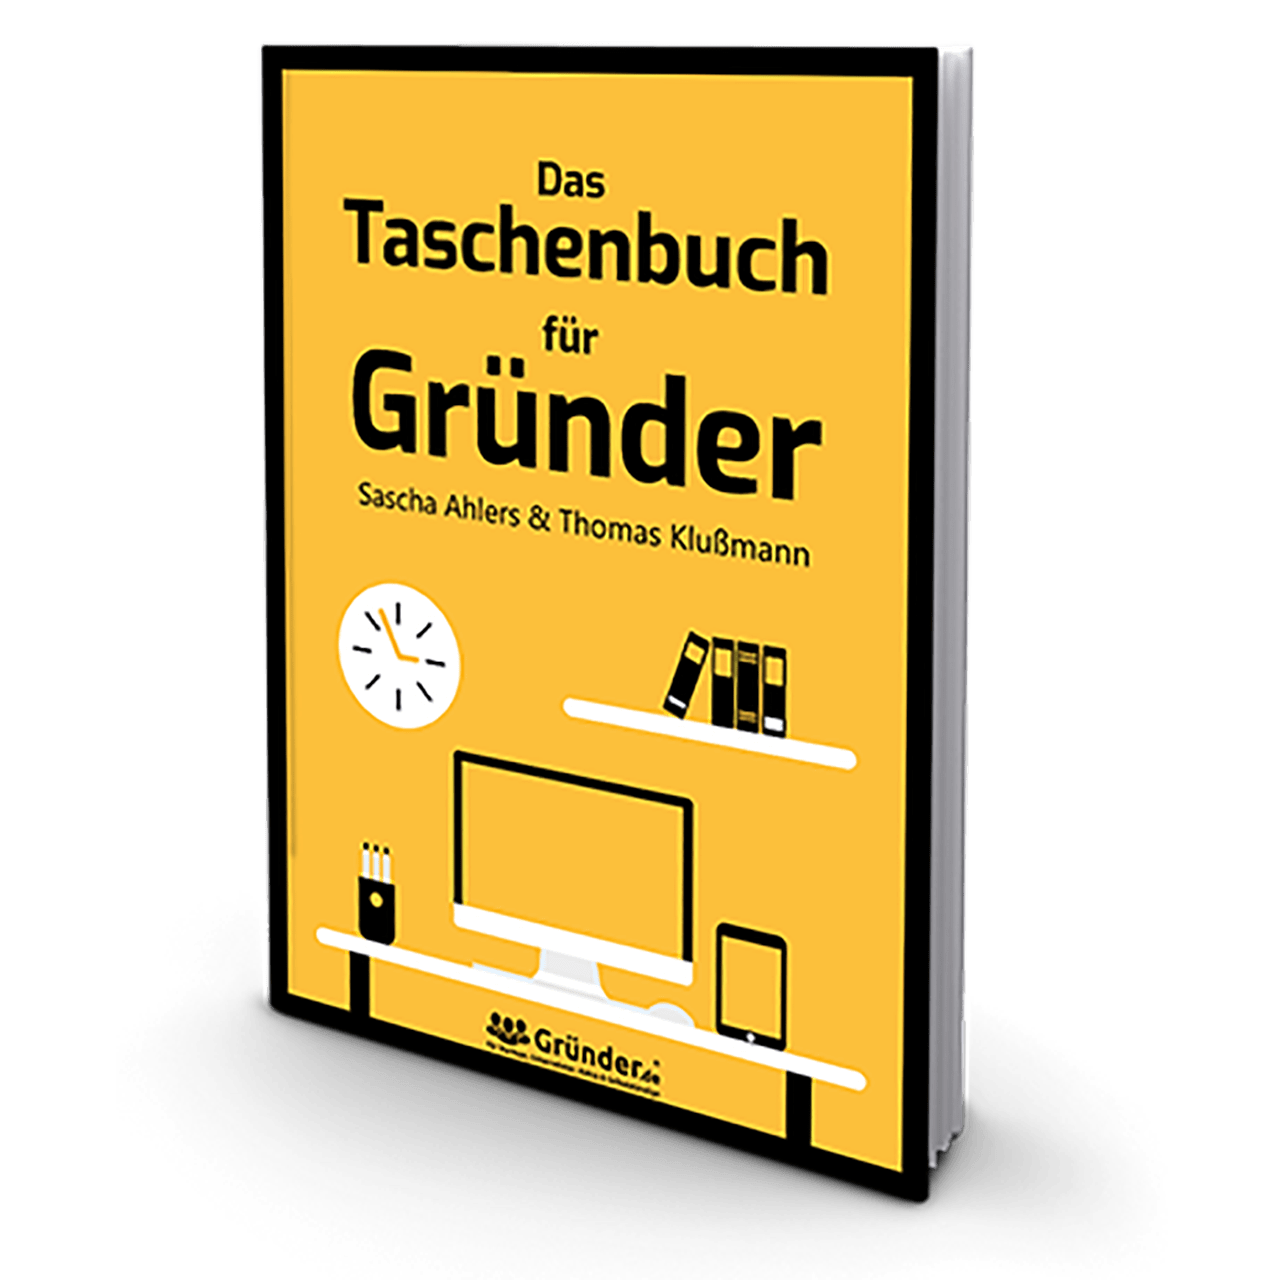 Das Taschenbuch für Gründer von Thomas Klußmann